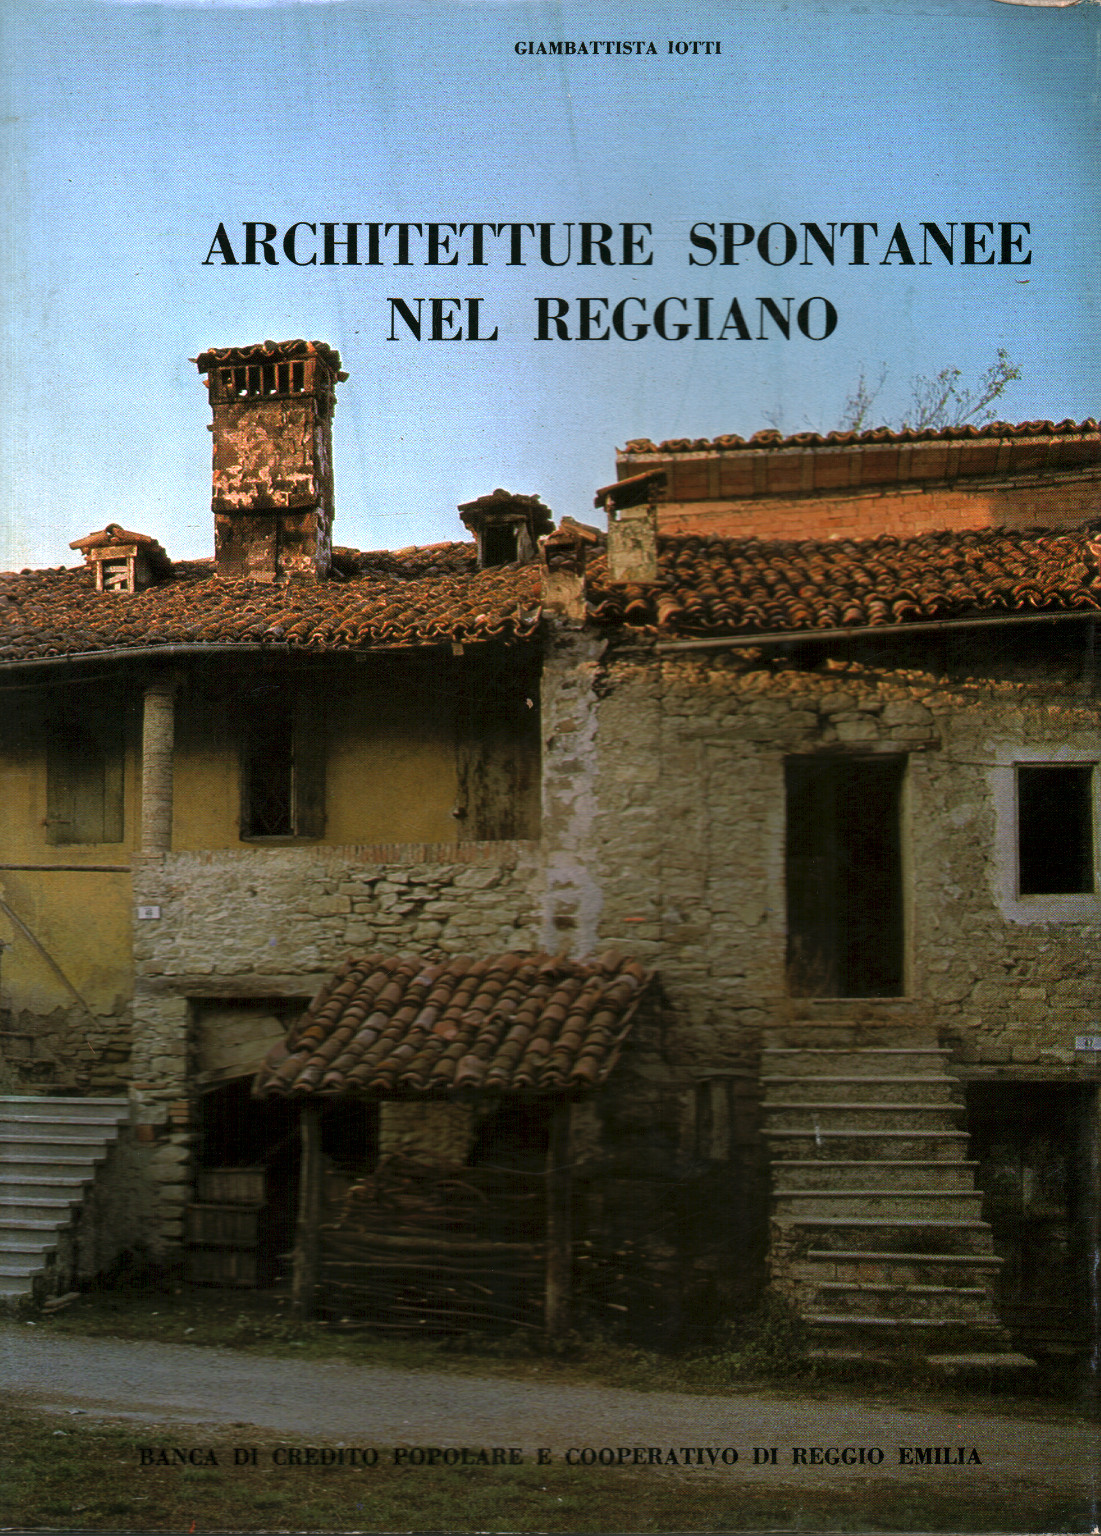 Architetture spontanee nel Reggiano, s.a.